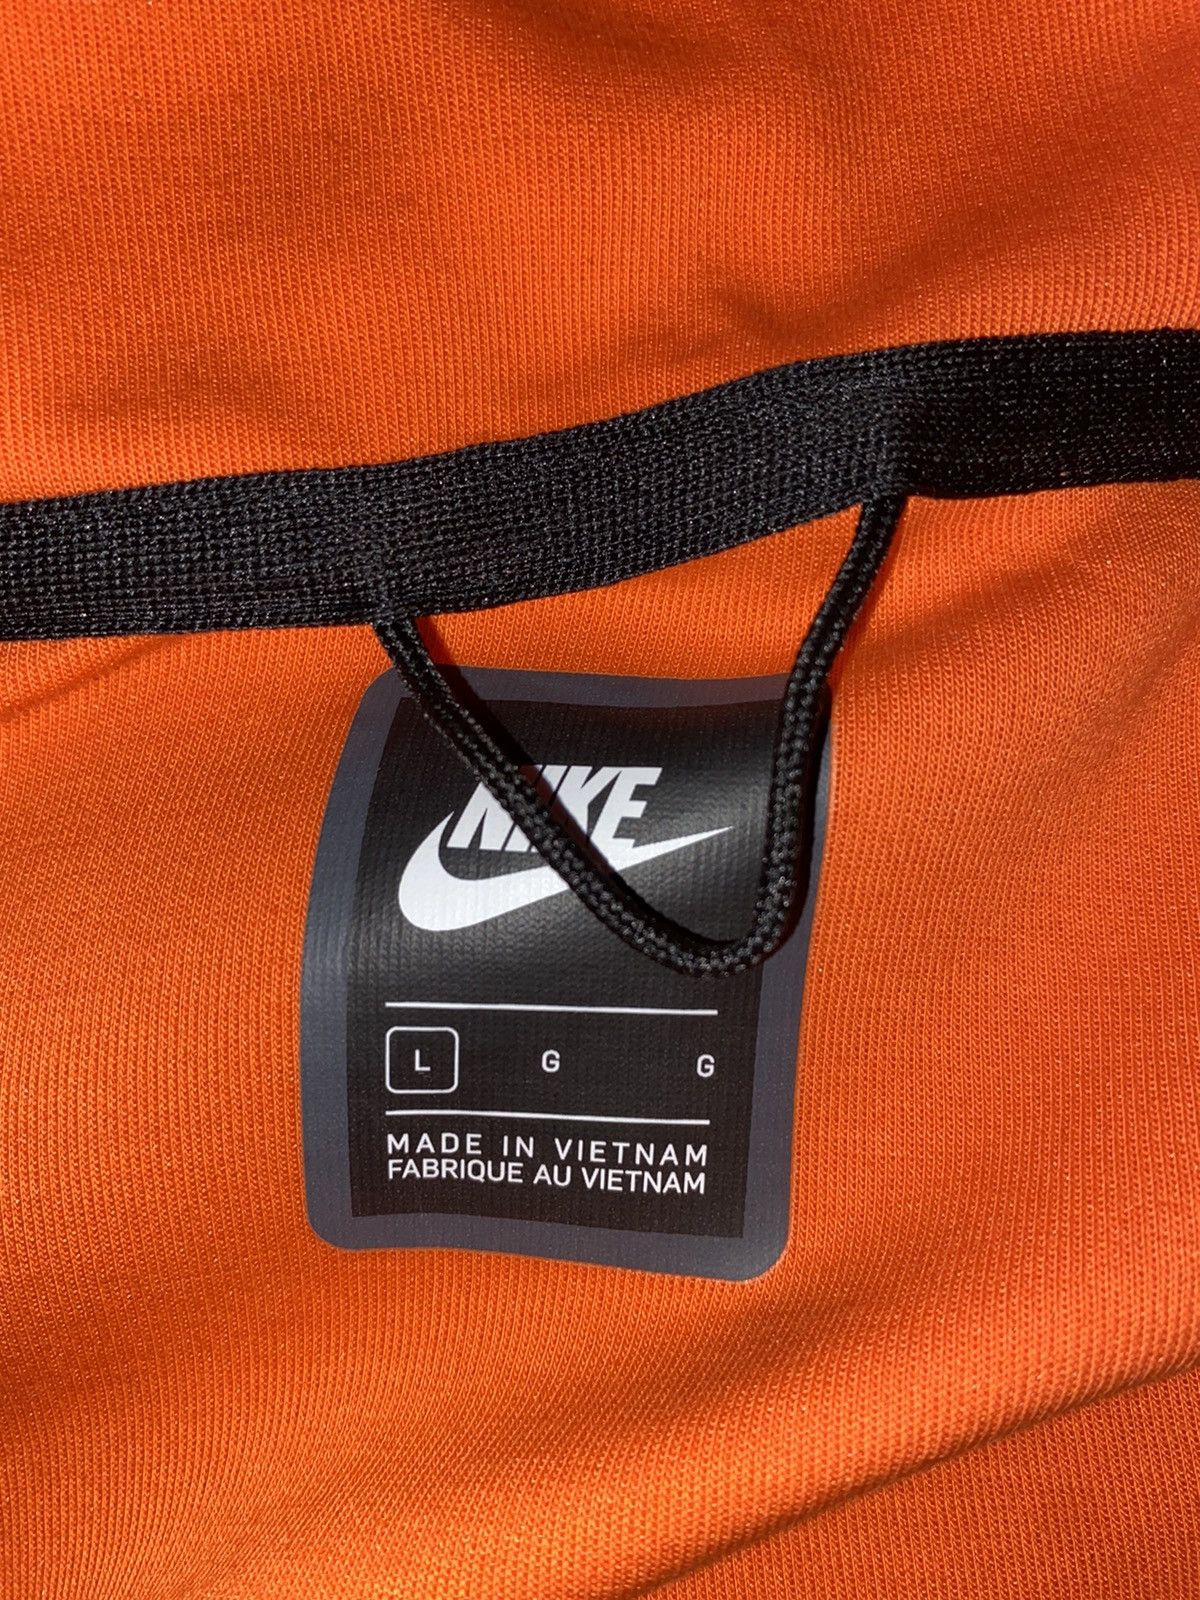 Nike Nike Tech Fleece Full Zip Hoodie Size US L / EU 52-54 / 3 - 4 Thumbnail